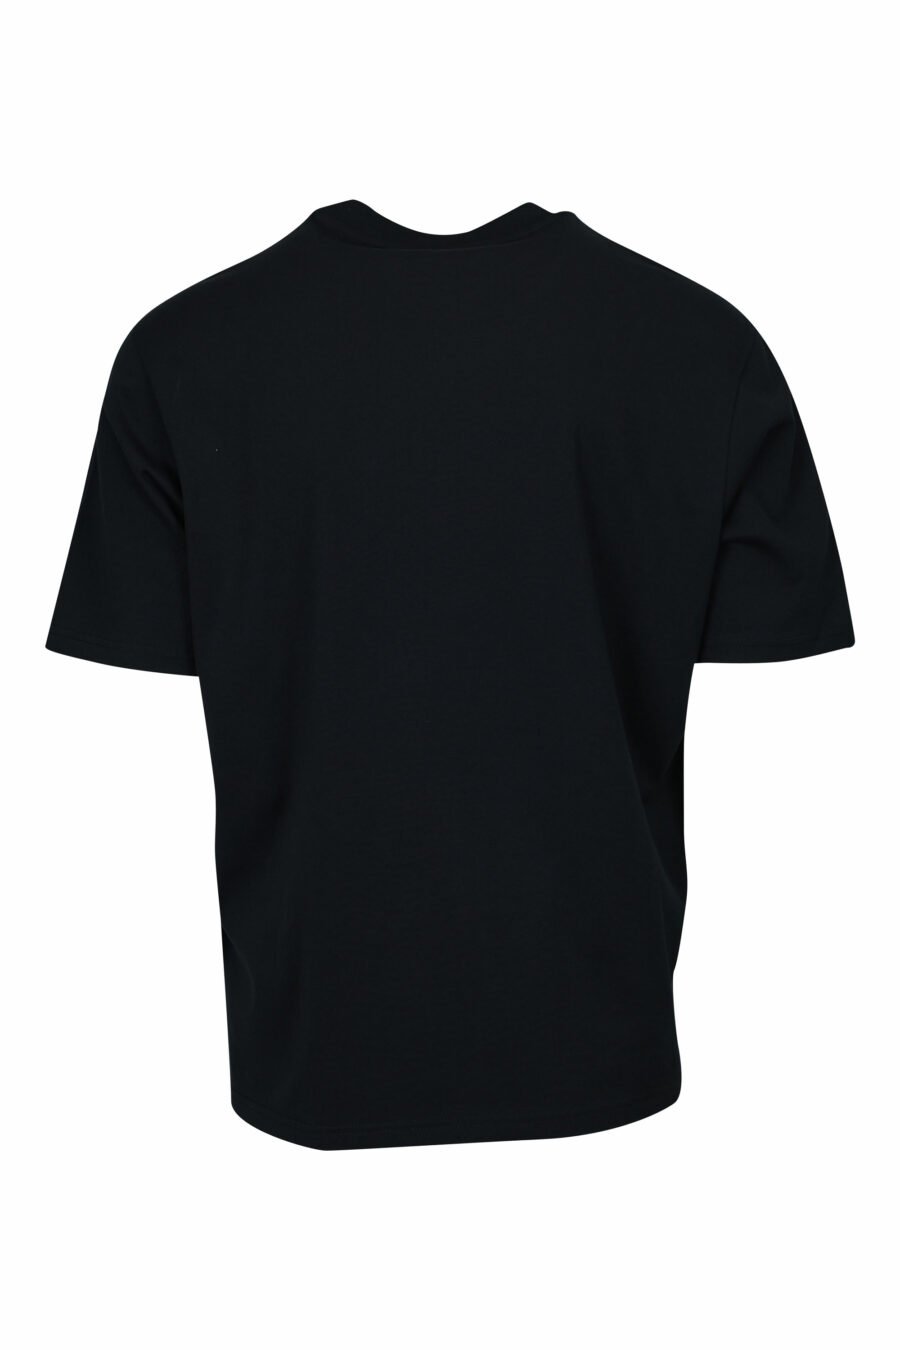 T-shirt preta com estampado de folhas e maxilogo "emporio" - 8058947296163 1